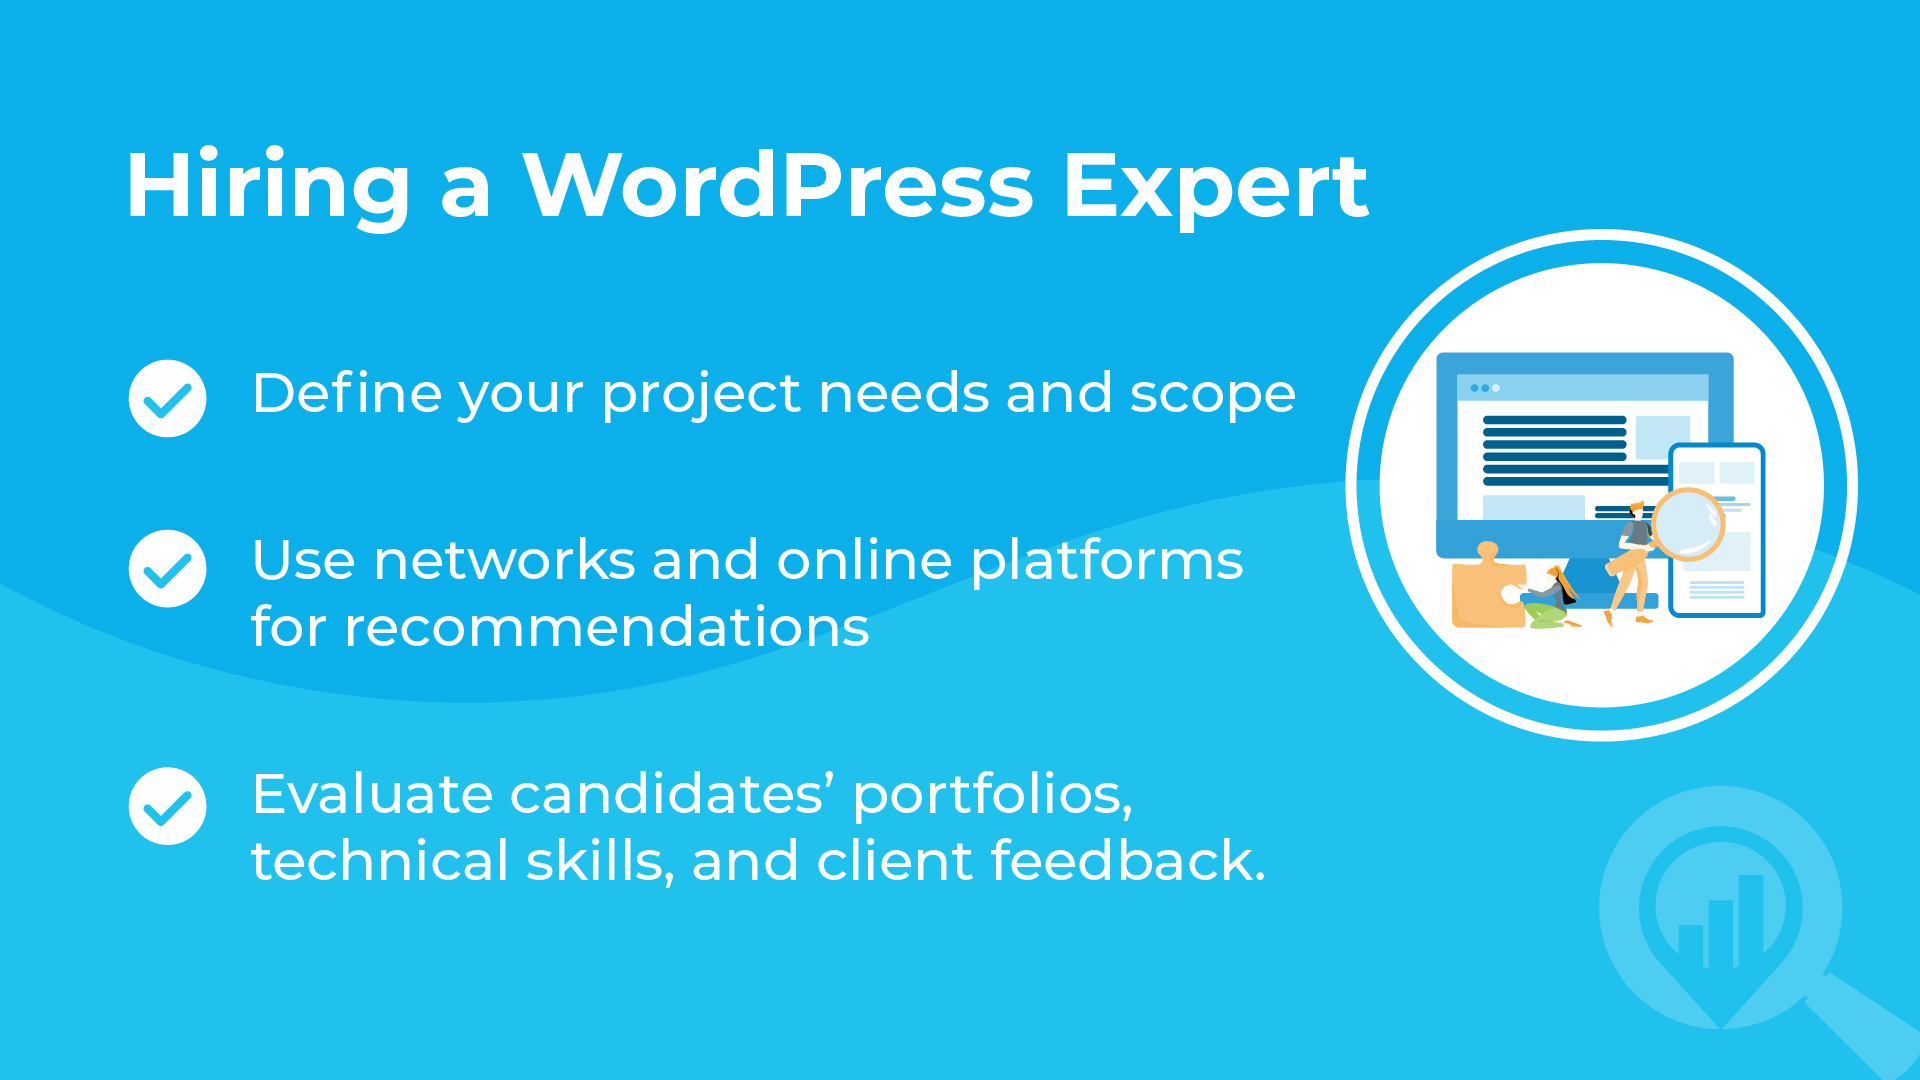 Hiring a WordPress Expert Guide